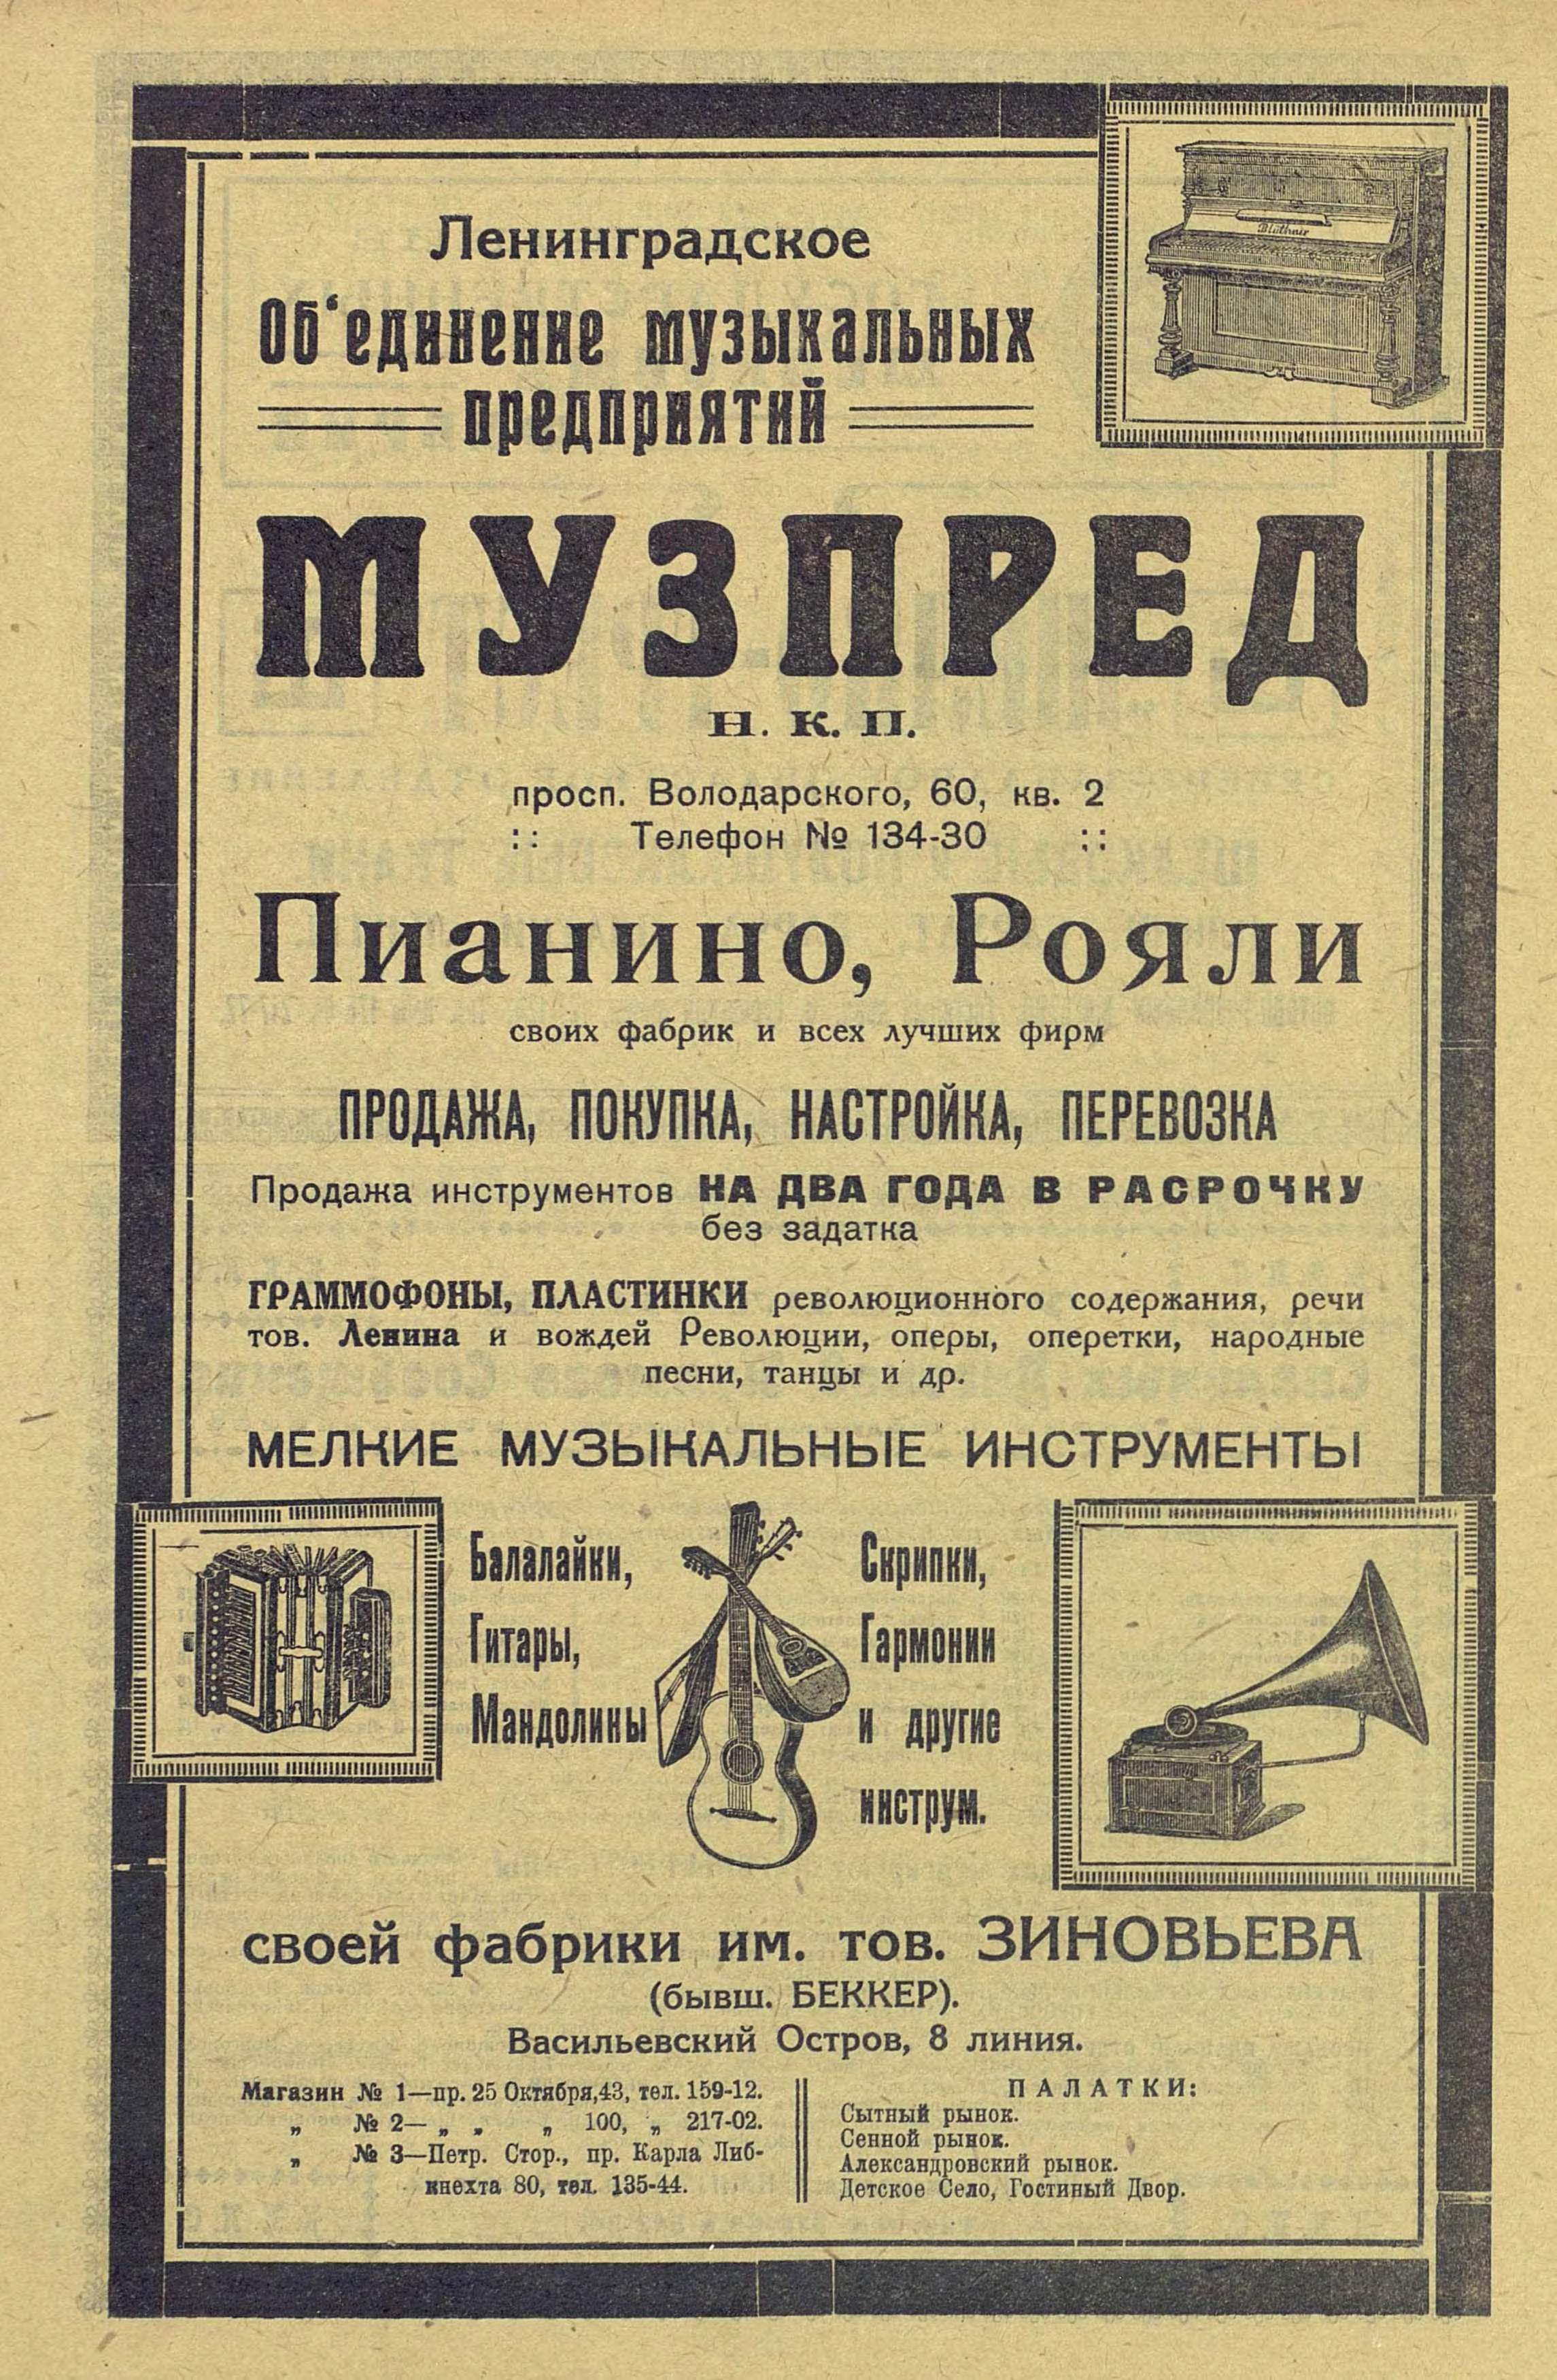 Реклама Музпреда НКП (Ленинградское отделение)